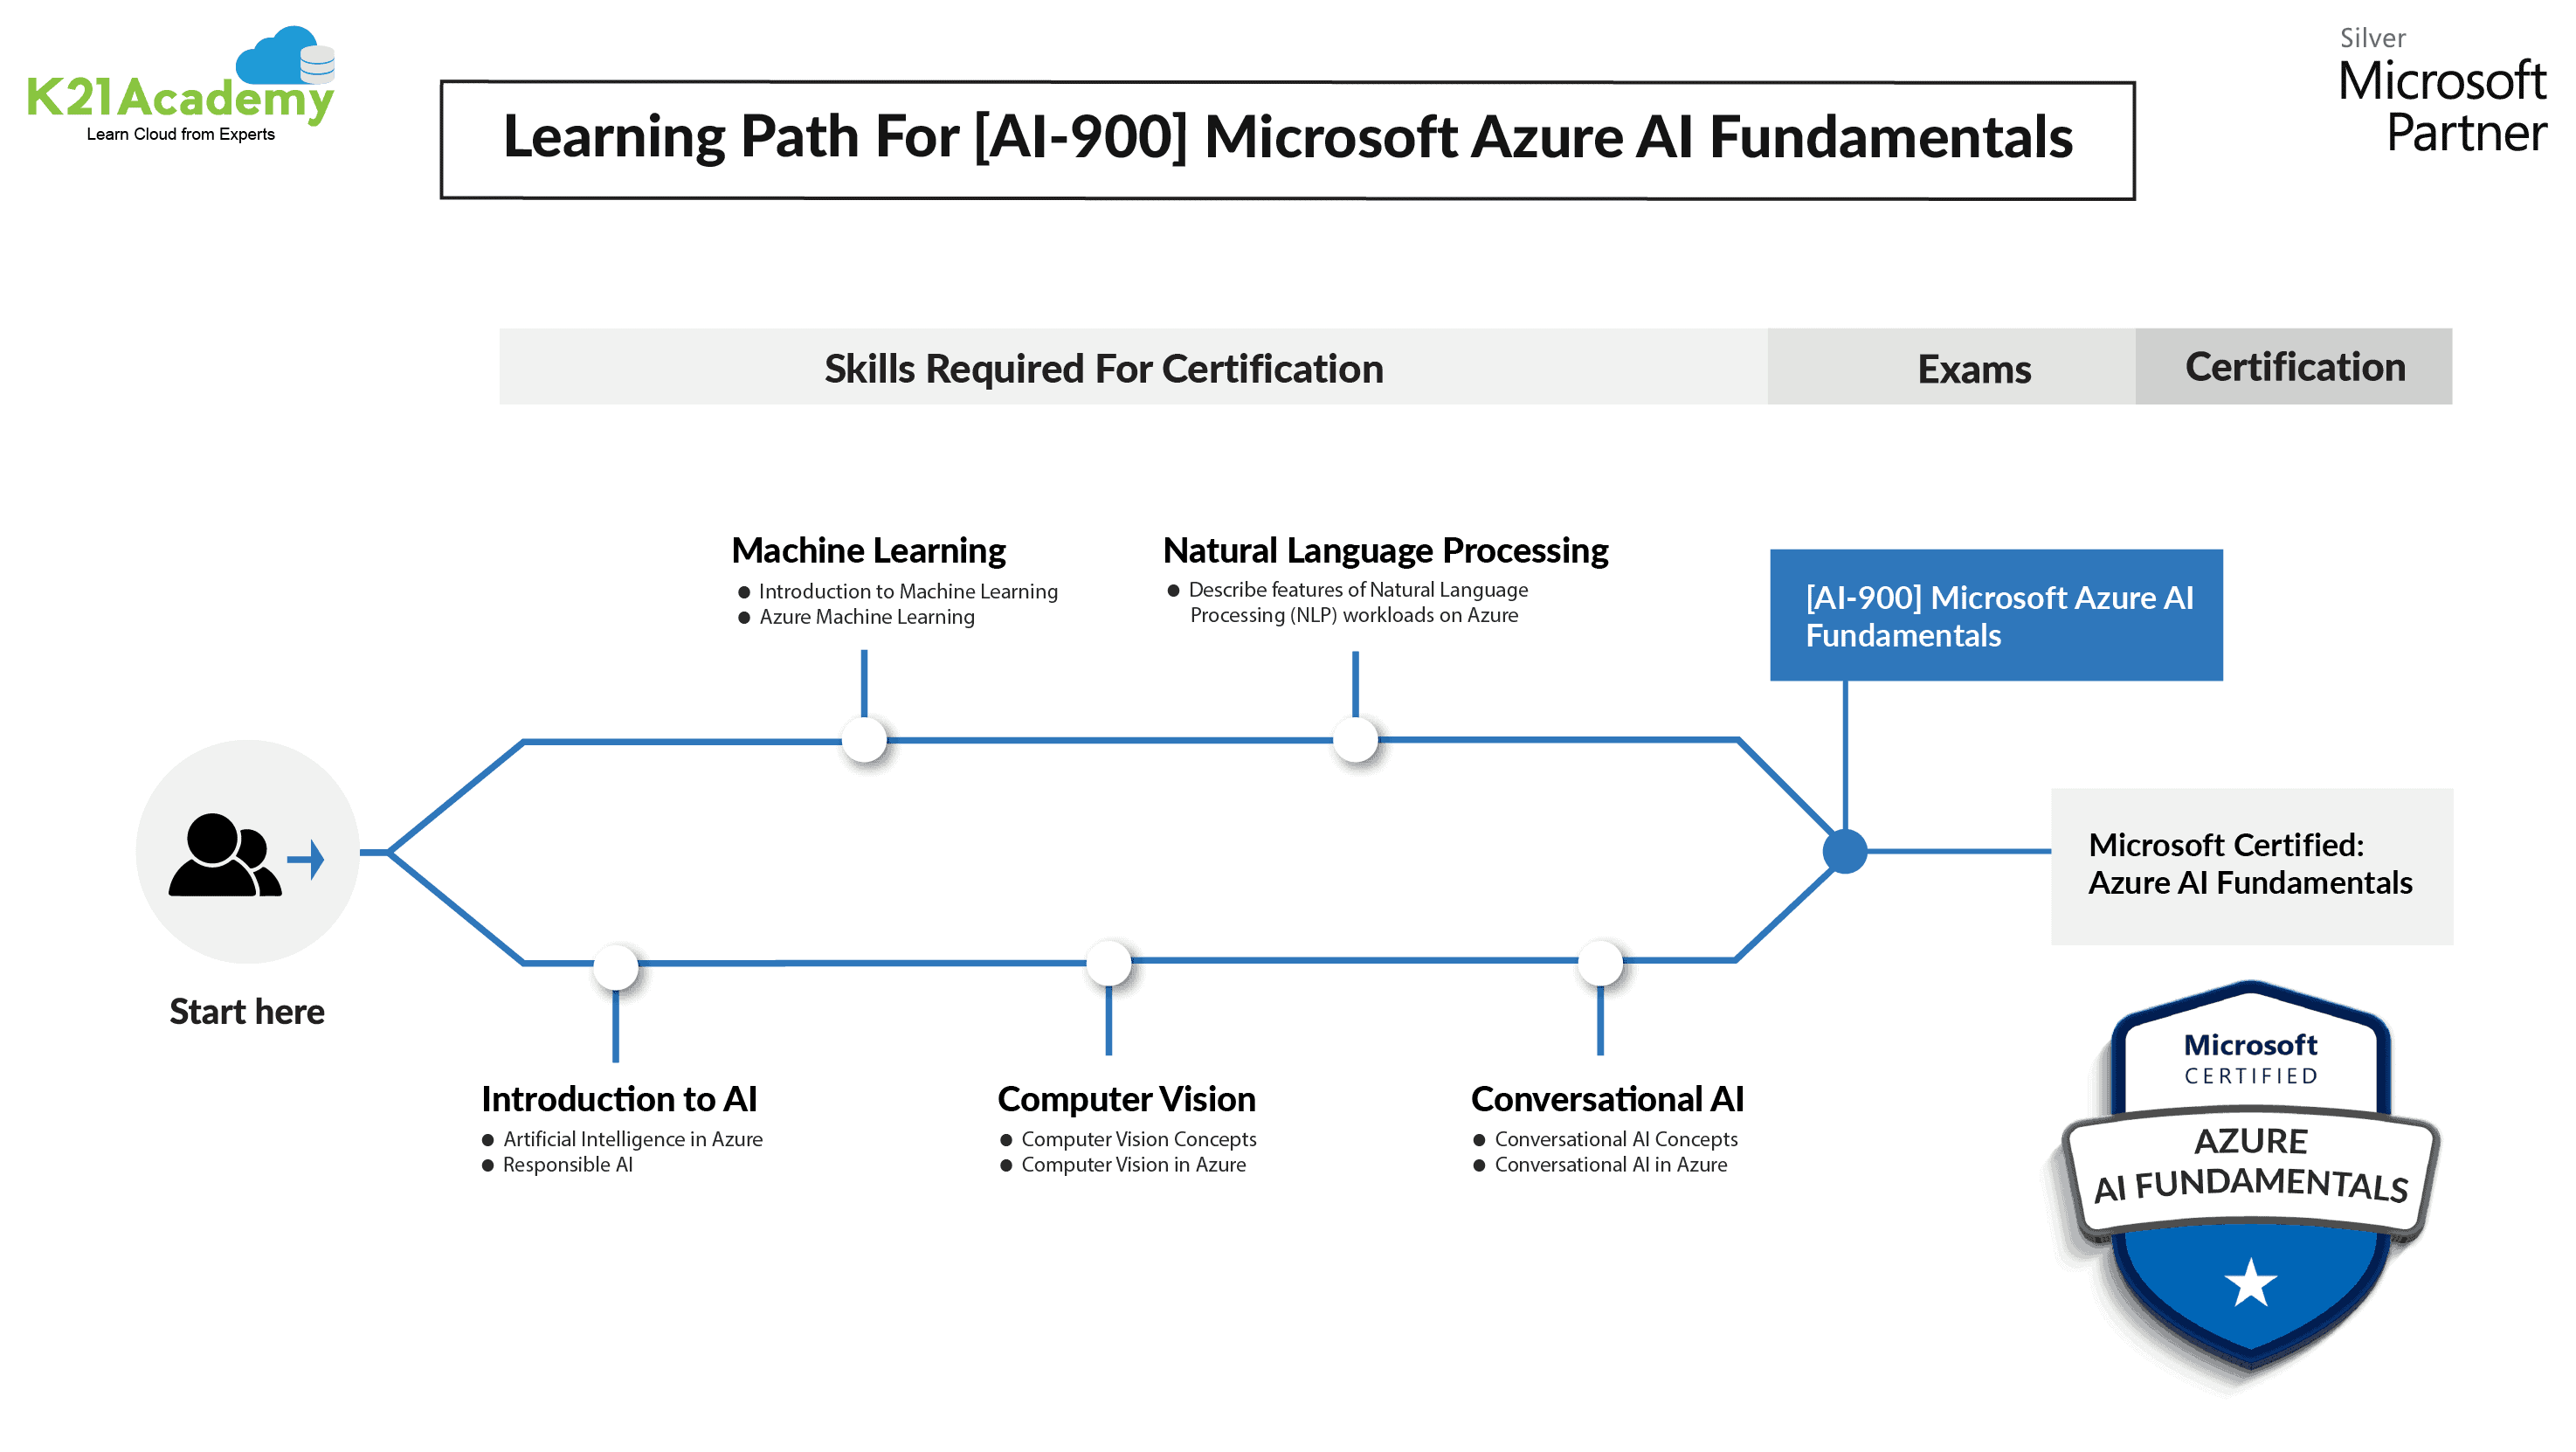 AI-900 Learning Path